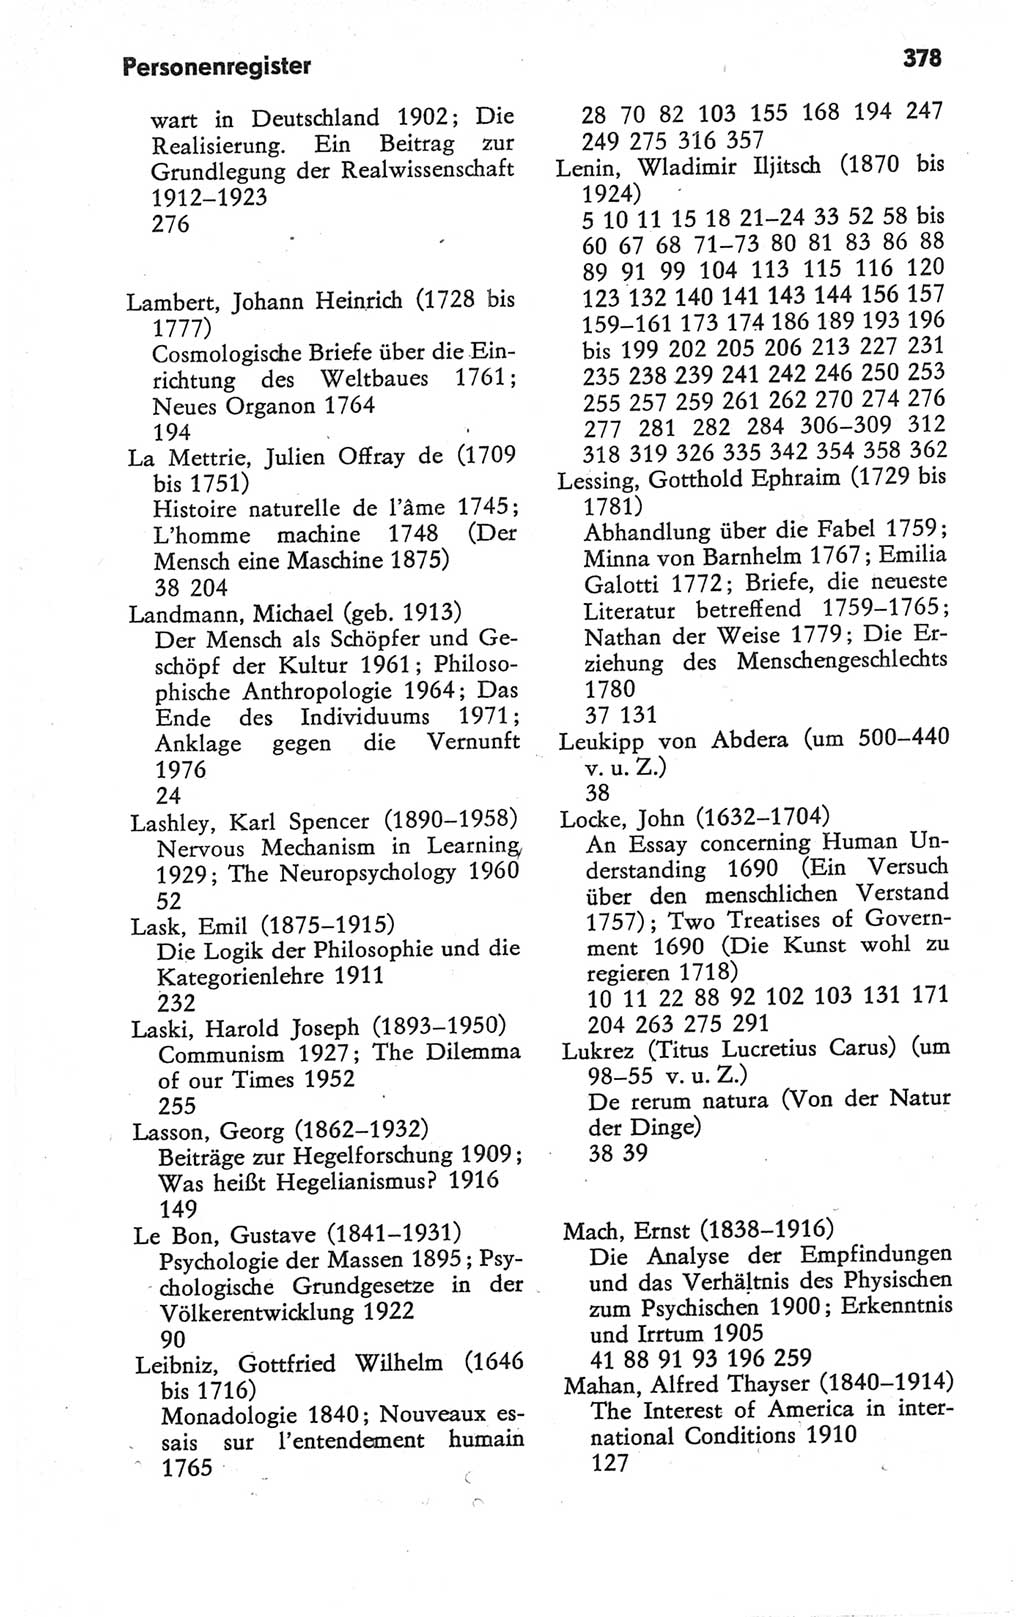 Kleines Wörterbuch der marxistisch-leninistischen Philosophie [Deutsche Demokratische Republik (DDR)] 1979, Seite 378 (Kl. Wb. ML Phil. DDR 1979, S. 378)